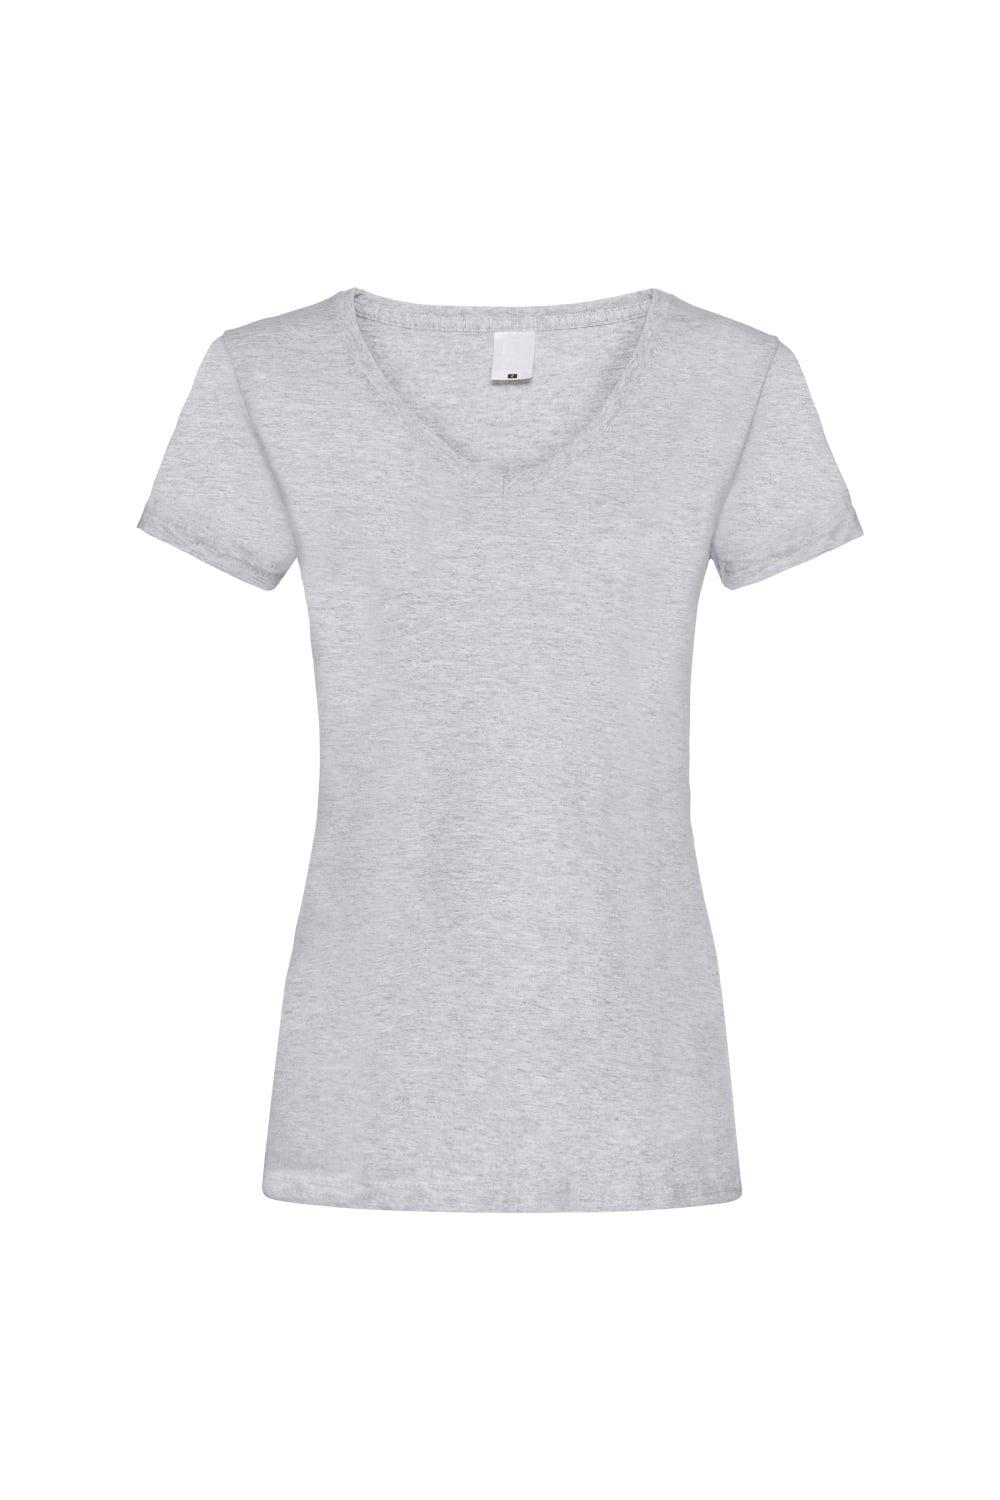 Повседневная футболка Value с V-образным вырезом и короткими рукавами Universal Textiles, серый футболка женская mia серый меланж размер xl